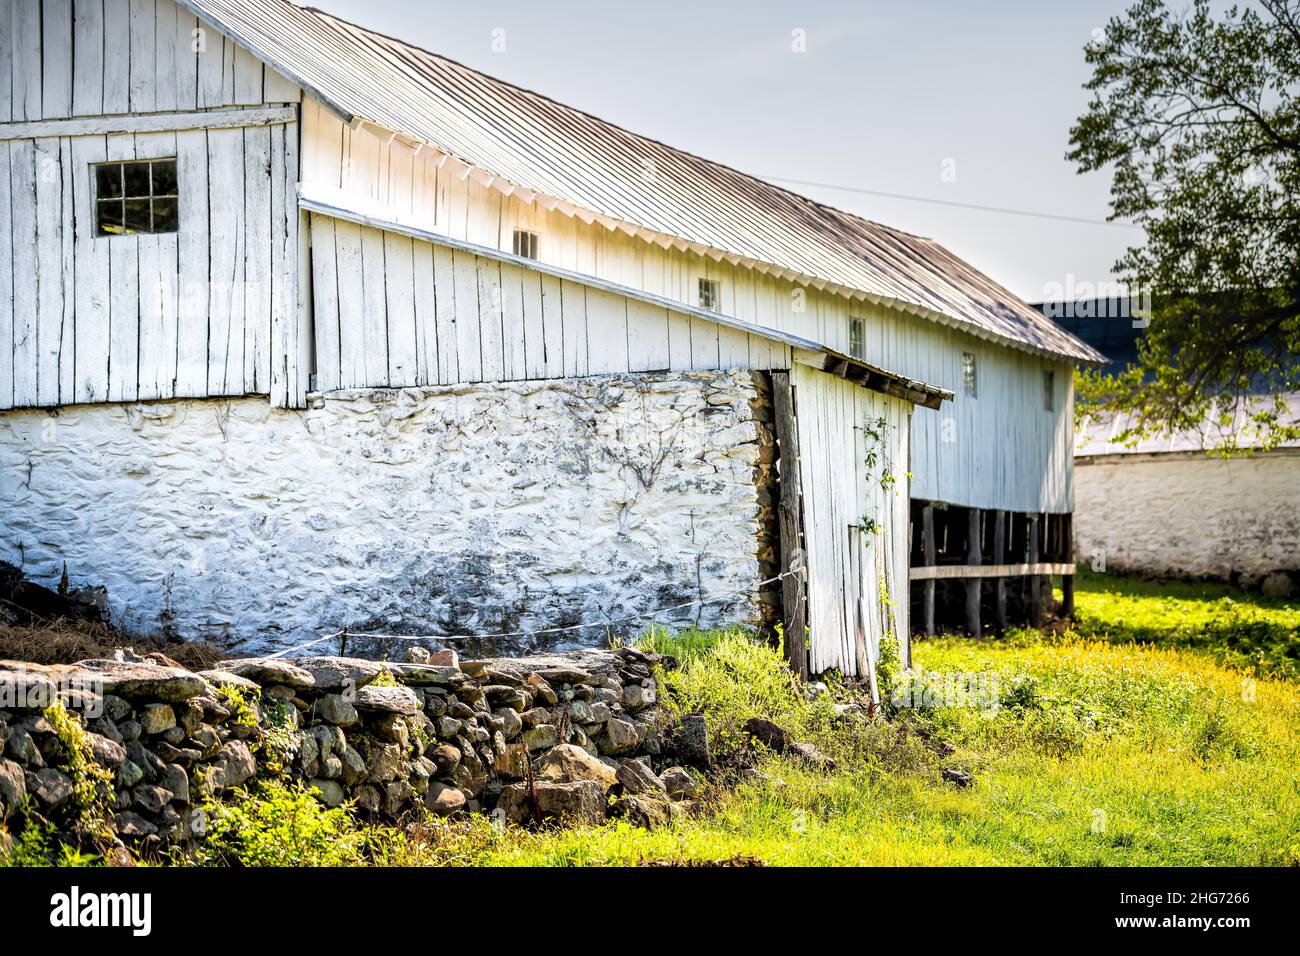 Campagna rurale in Virginia con legno vecchio vintage run-down storico casa colonica bianca casa edificio in fattoria con cantina in pietra su capannone e nobo Foto Stock